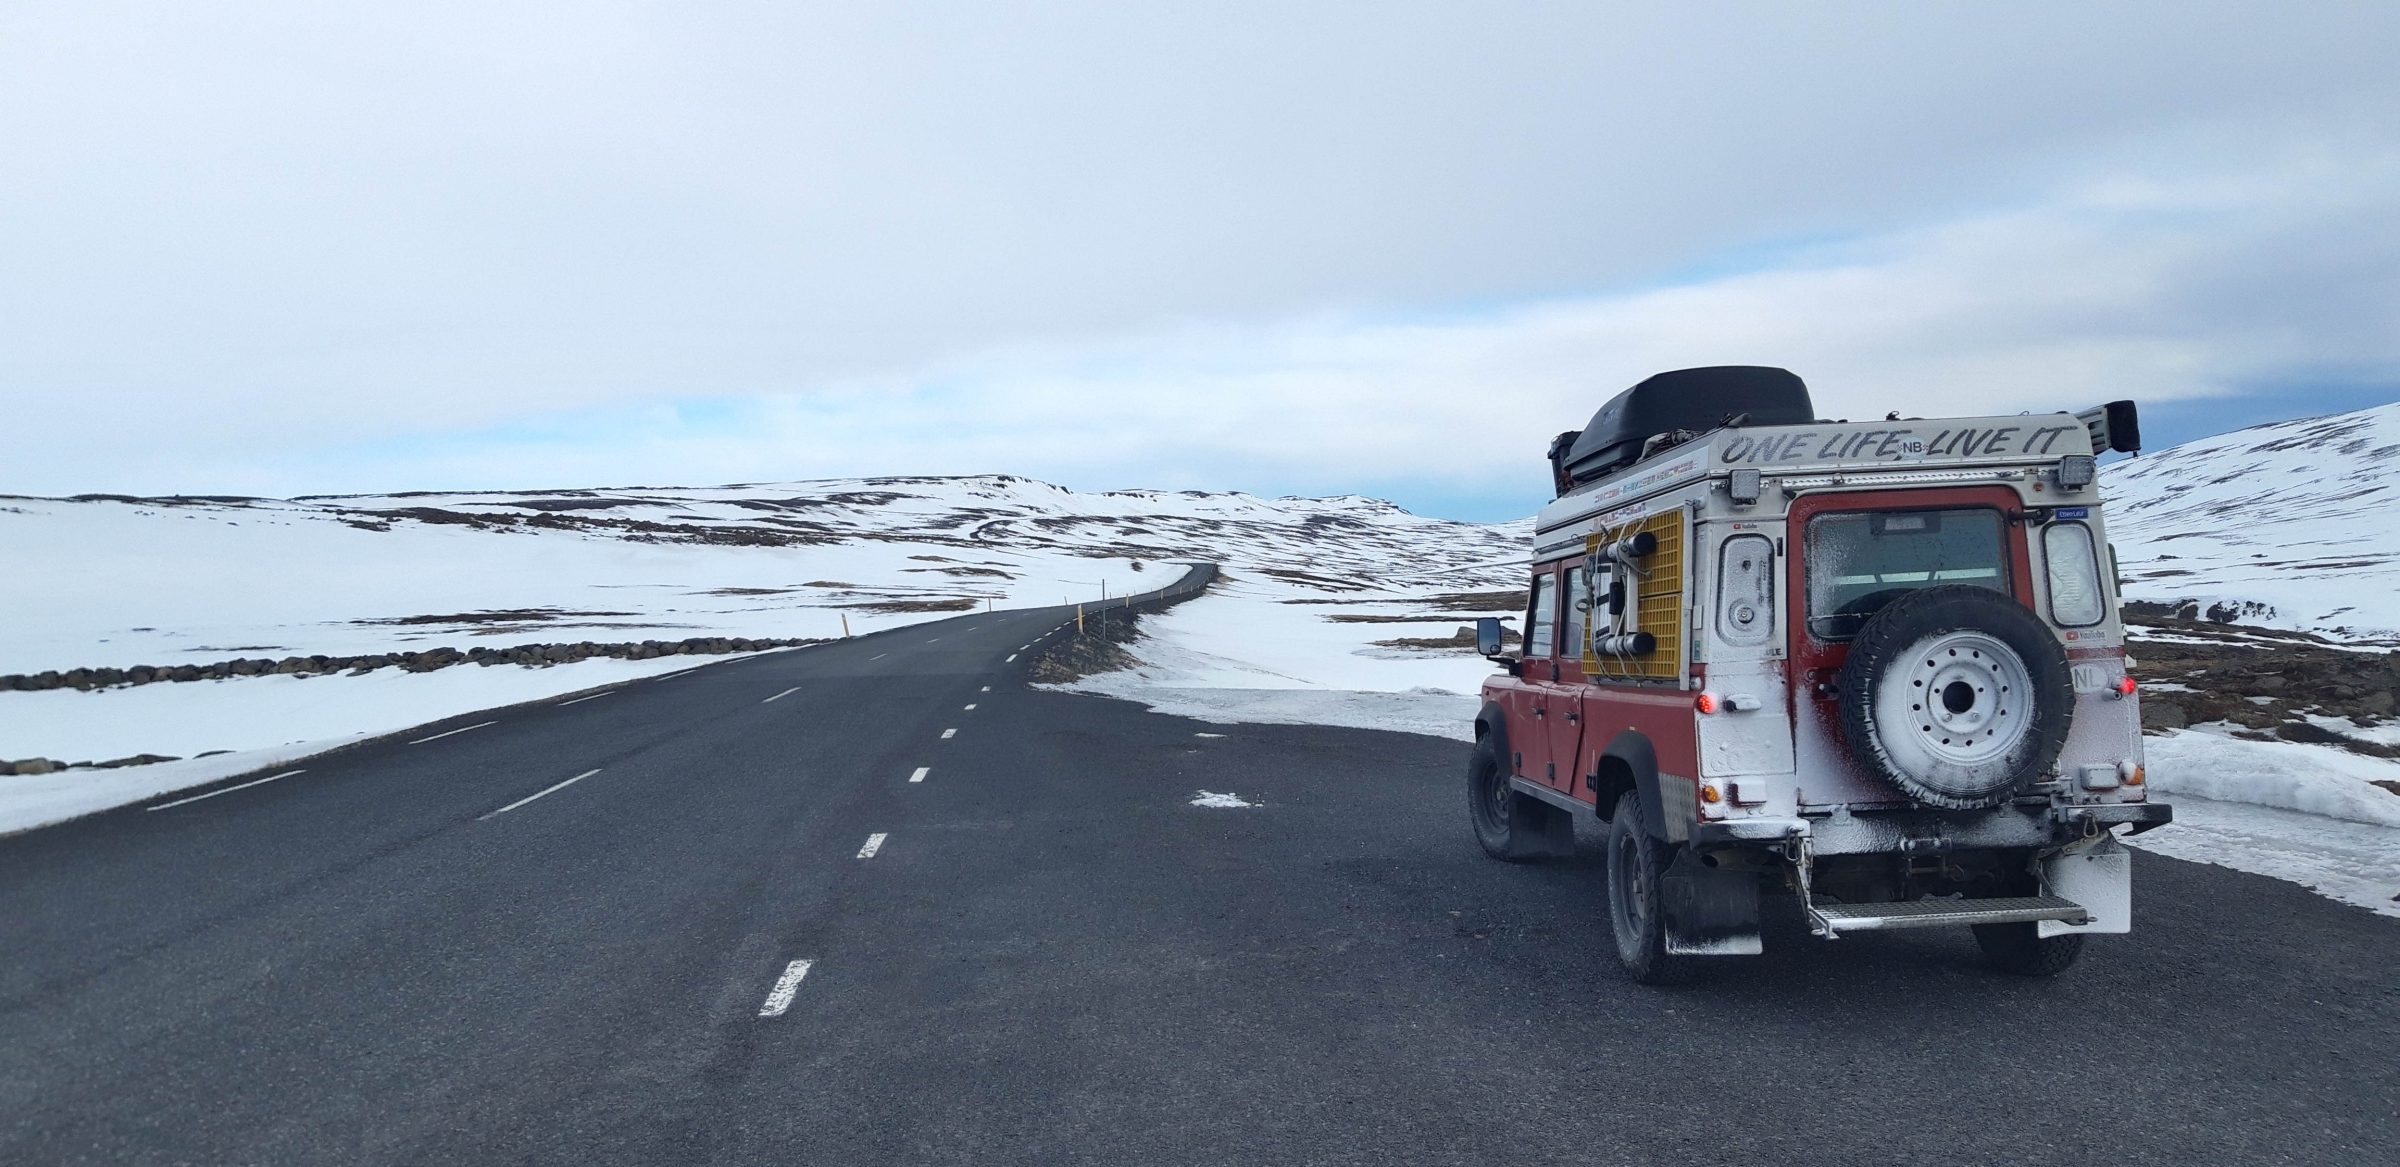 アイスランド 2 日目、小さな吹雪 | 冬のアイスランドとフェロー諸島